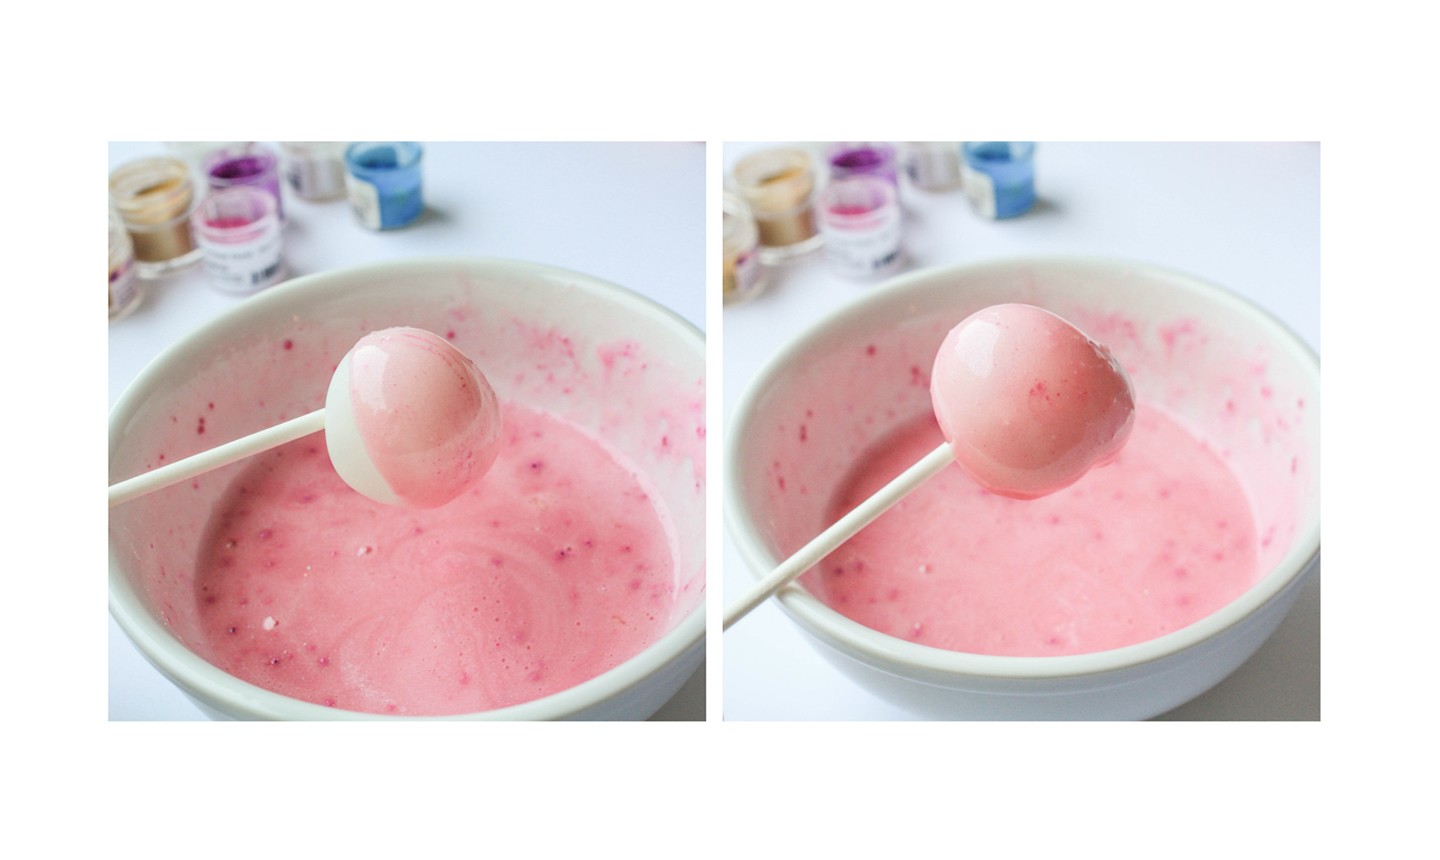 coating balloon in gelatin